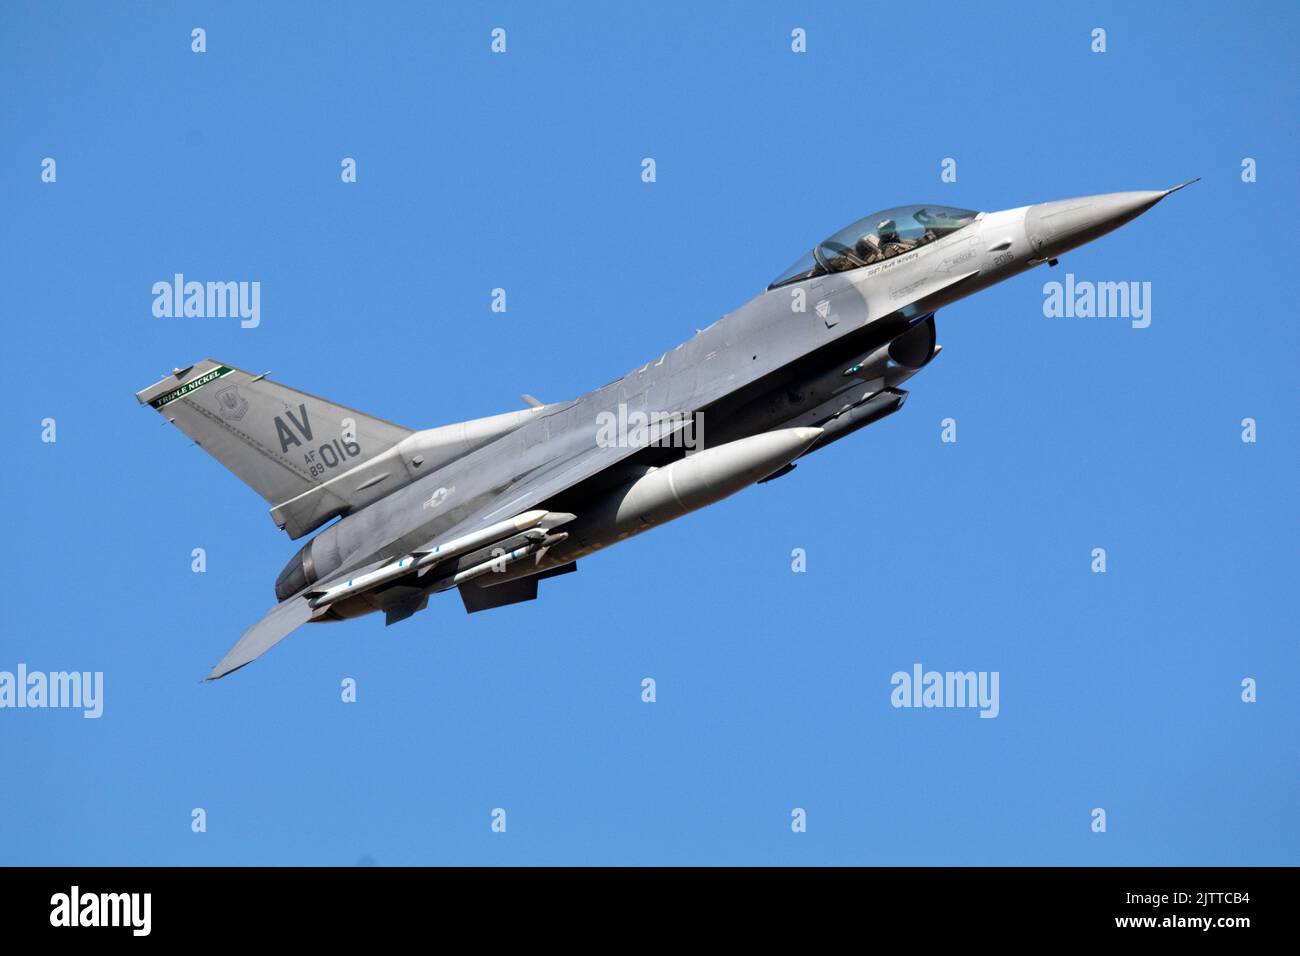 AF 89-016 USAF Lockheed Martin (General Dynamics) F-16cm-40-CF Faucon Fighting c/n 1C-290 '31 OG' décollage à la piste 07 RAF Lakenheath, 31st août Banque D'Images